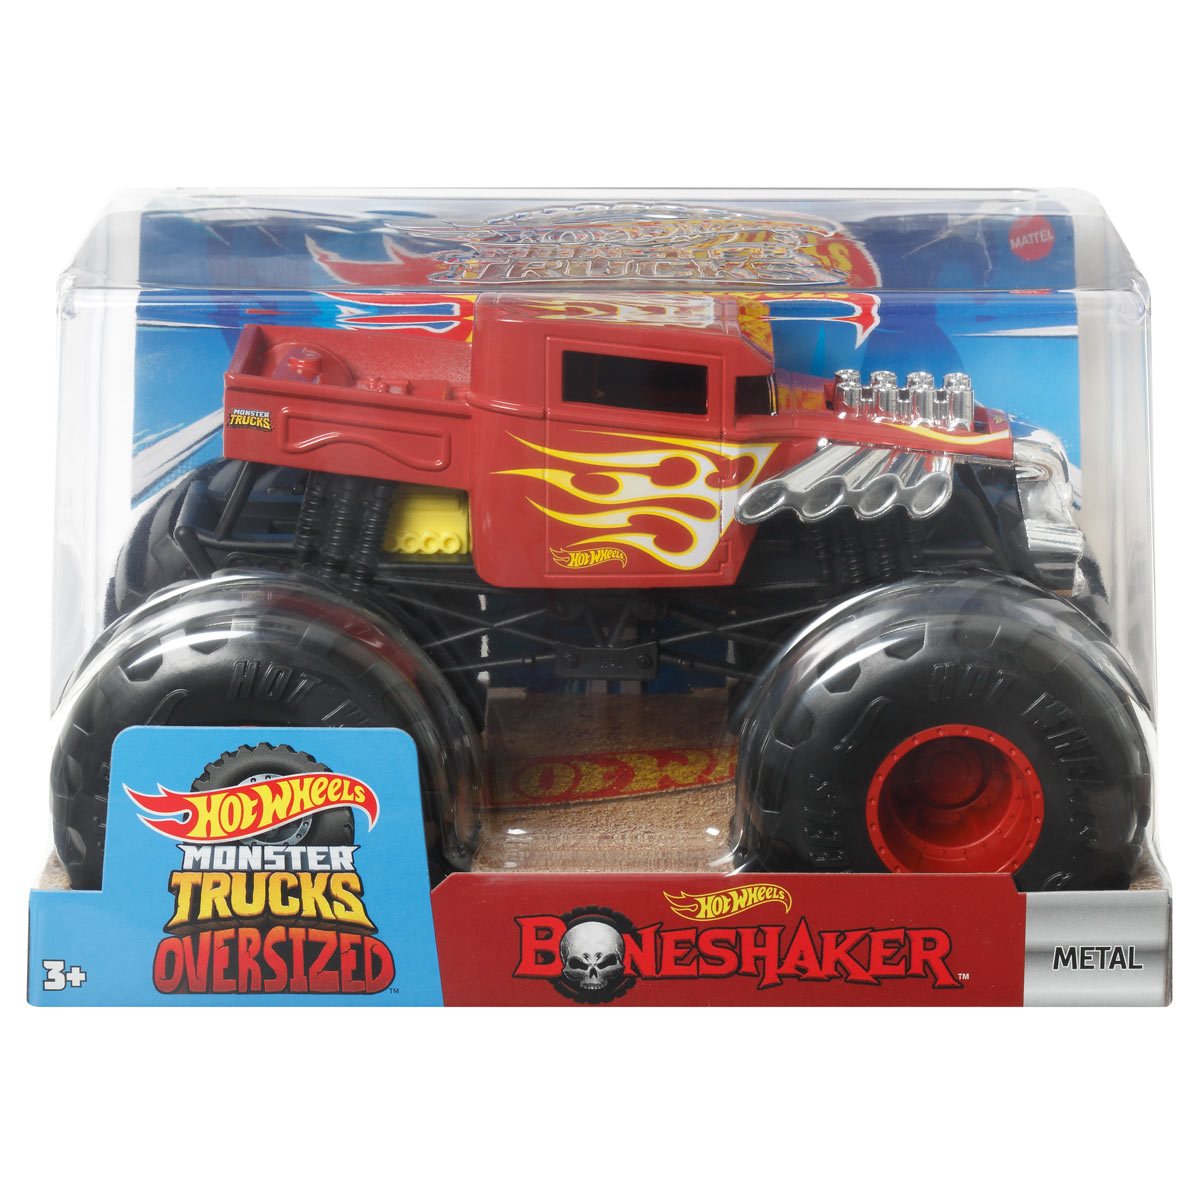 Hot Wheels Monster Trucks 1:24 Bone Shaker Vehicle 